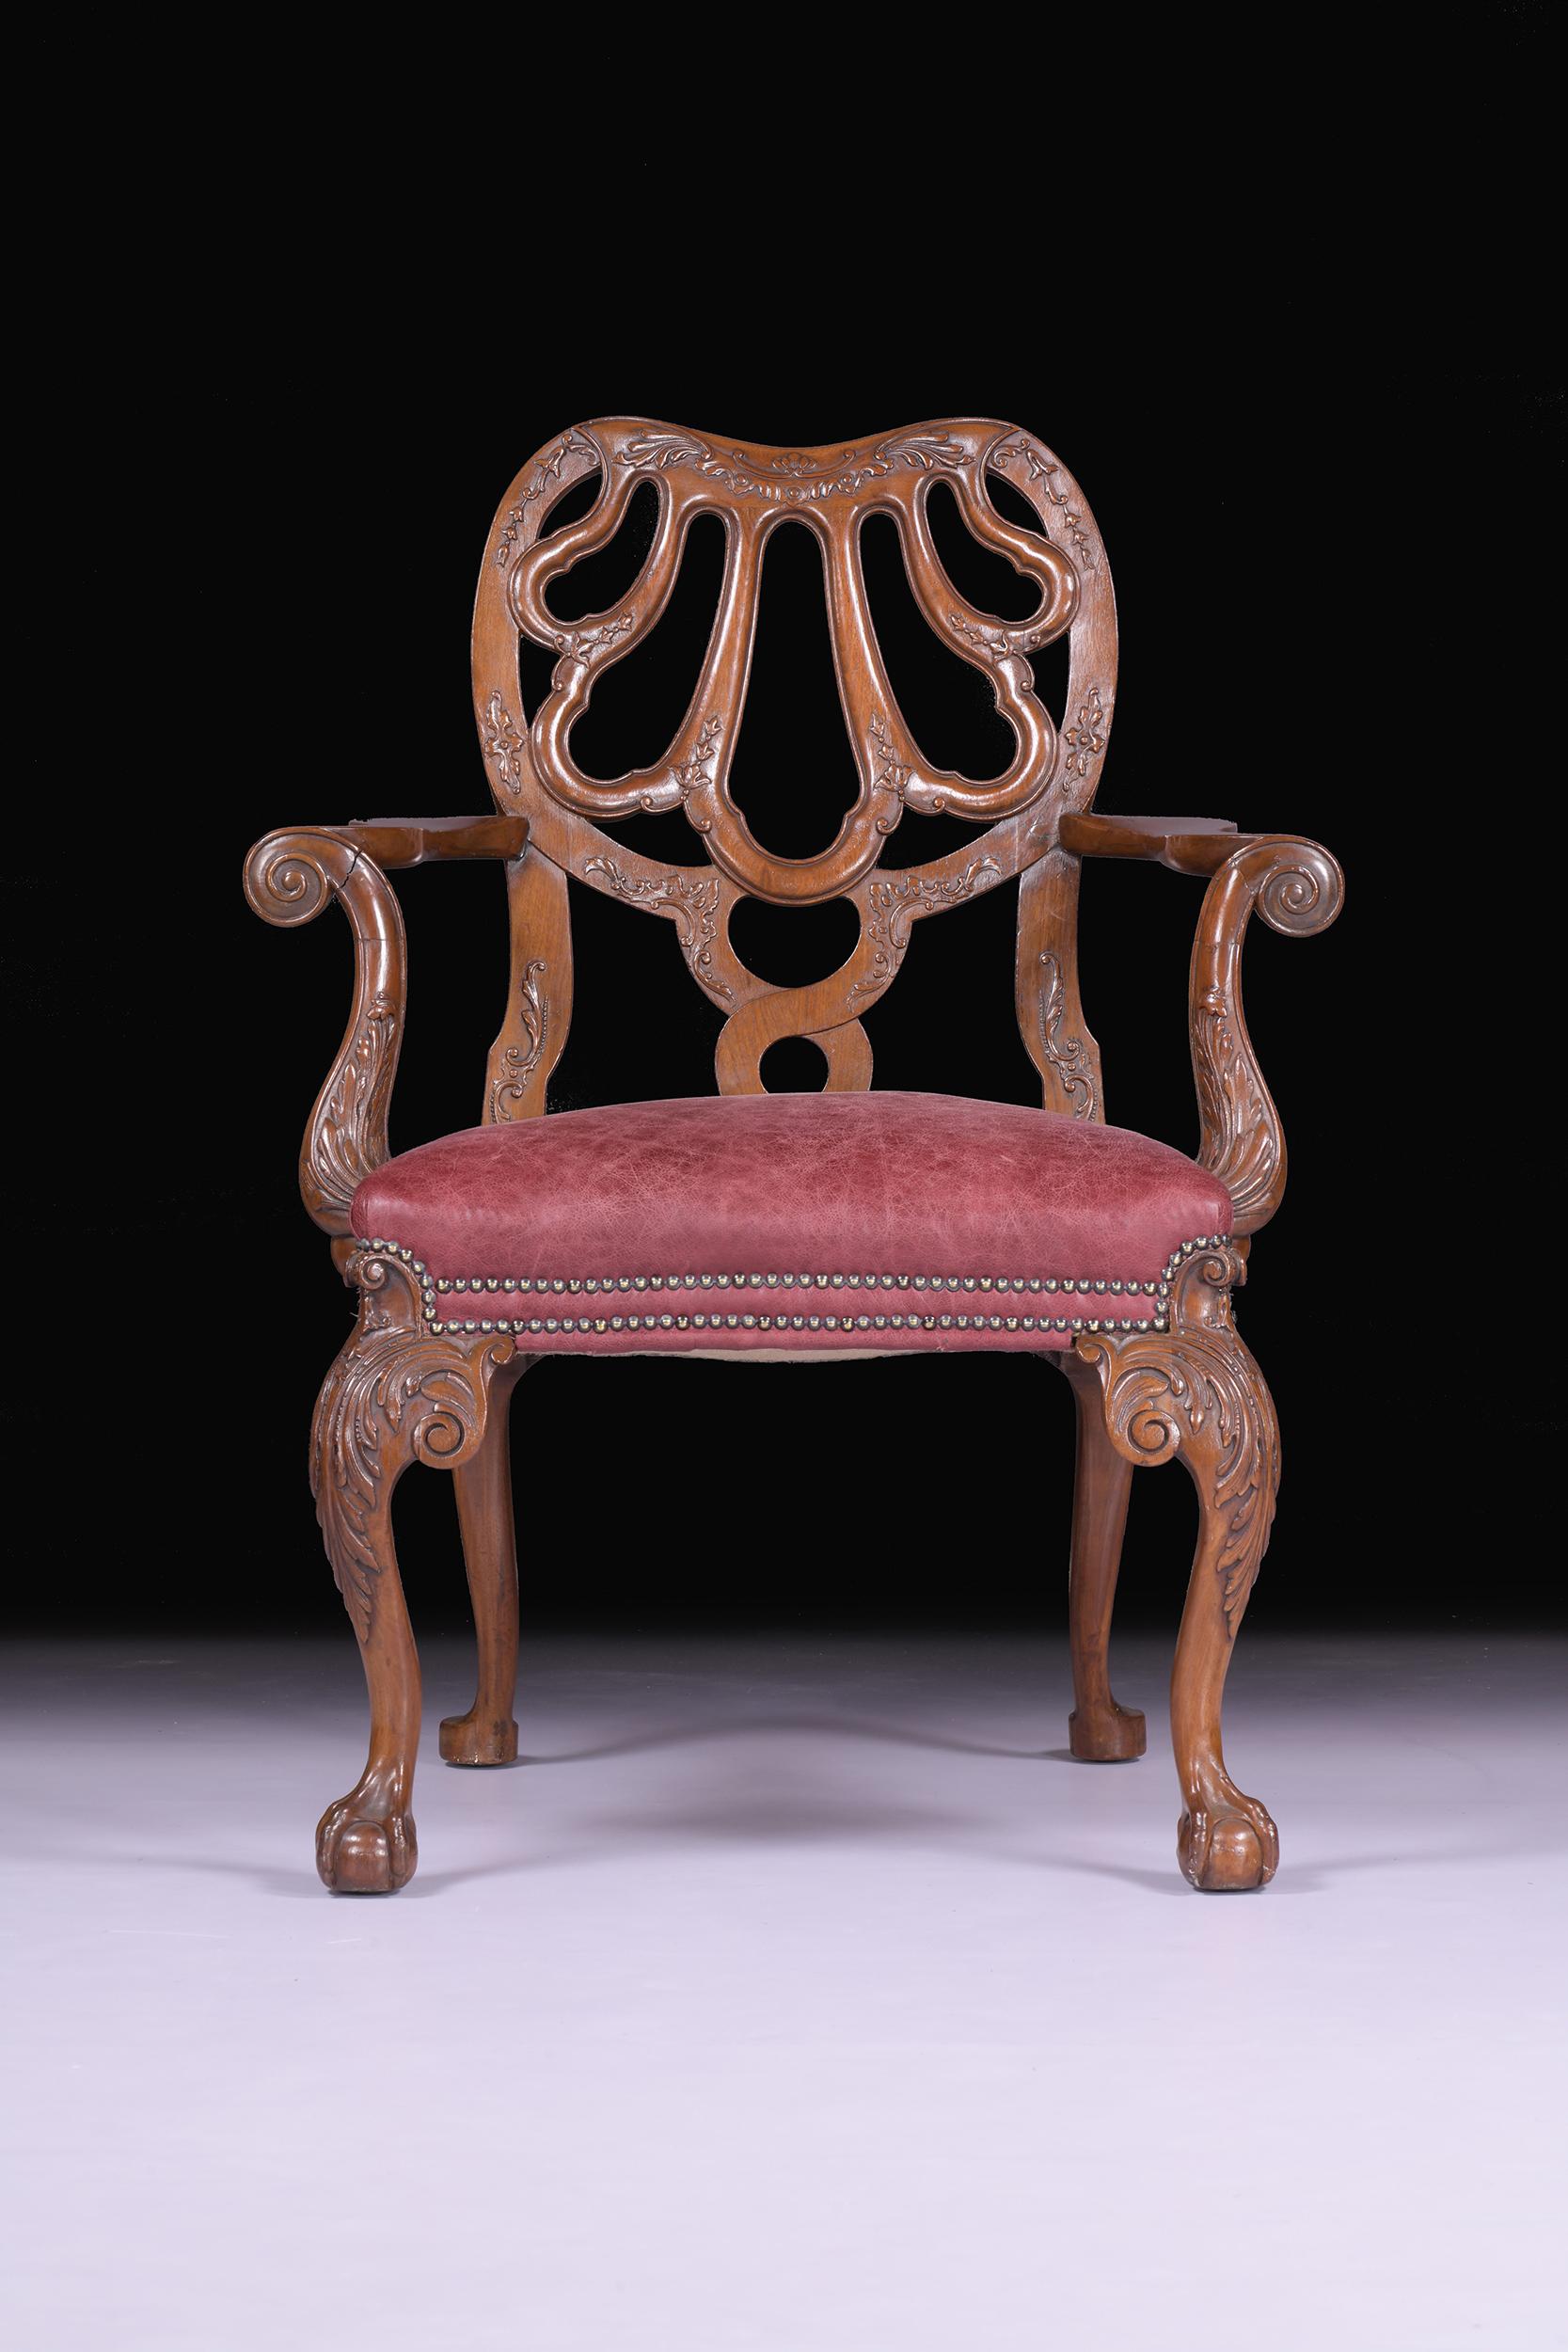 Eine hervorragende 19. Jahrhundert antike englische Sessel in der Art von Giles Grendey, die durchbrochene stilisierte Muschel splat zurück und scrolled Armlehnen mit Basrelief geschnitzt Dekoration, gepolsterten Sitz und hob auf Akanthus geschnitzt